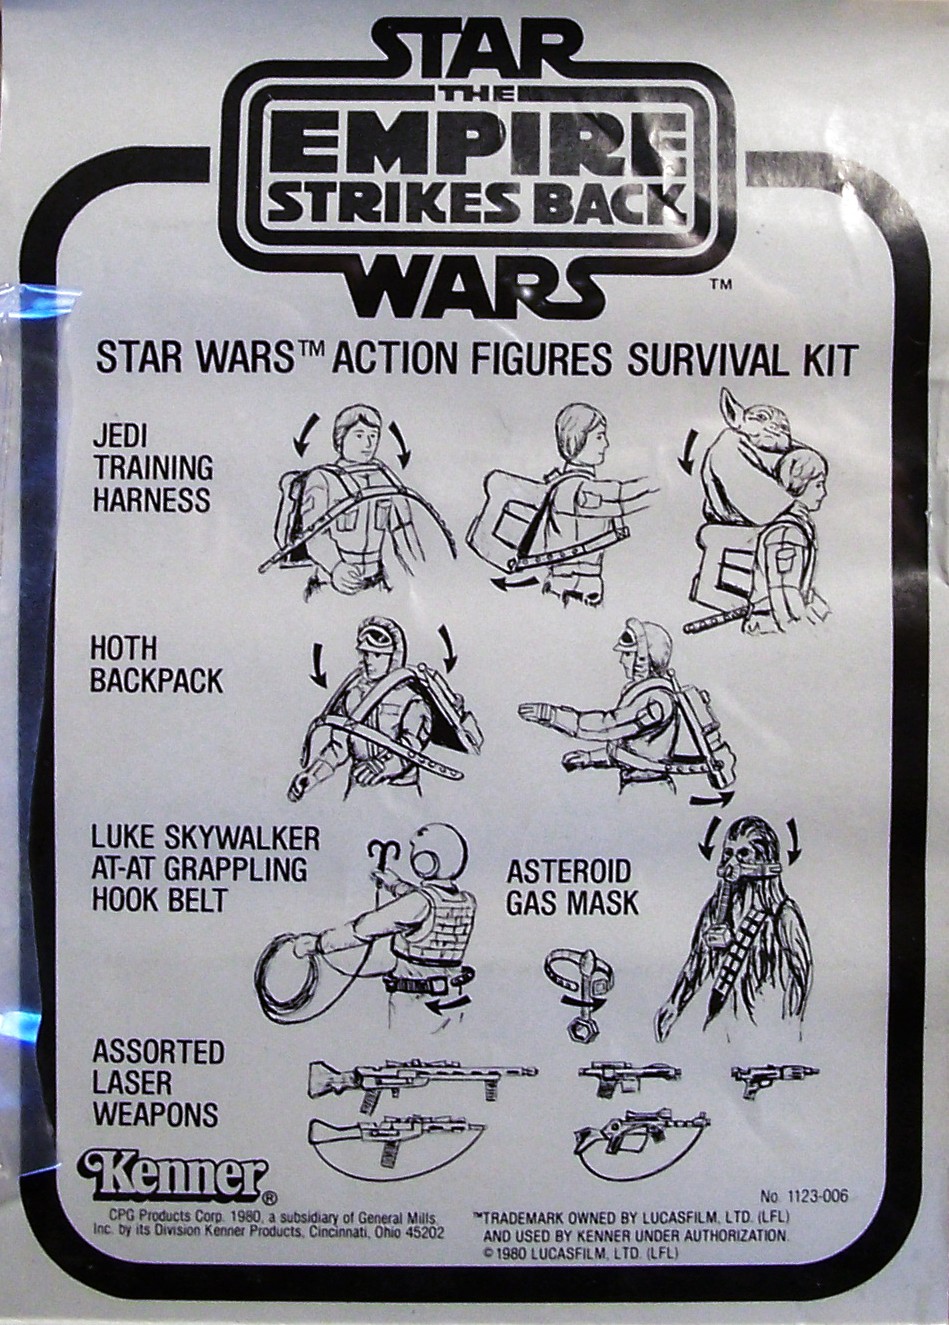 Star Wars Action Figures Survival Kit (34327), Star Wars Merchandise Wiki